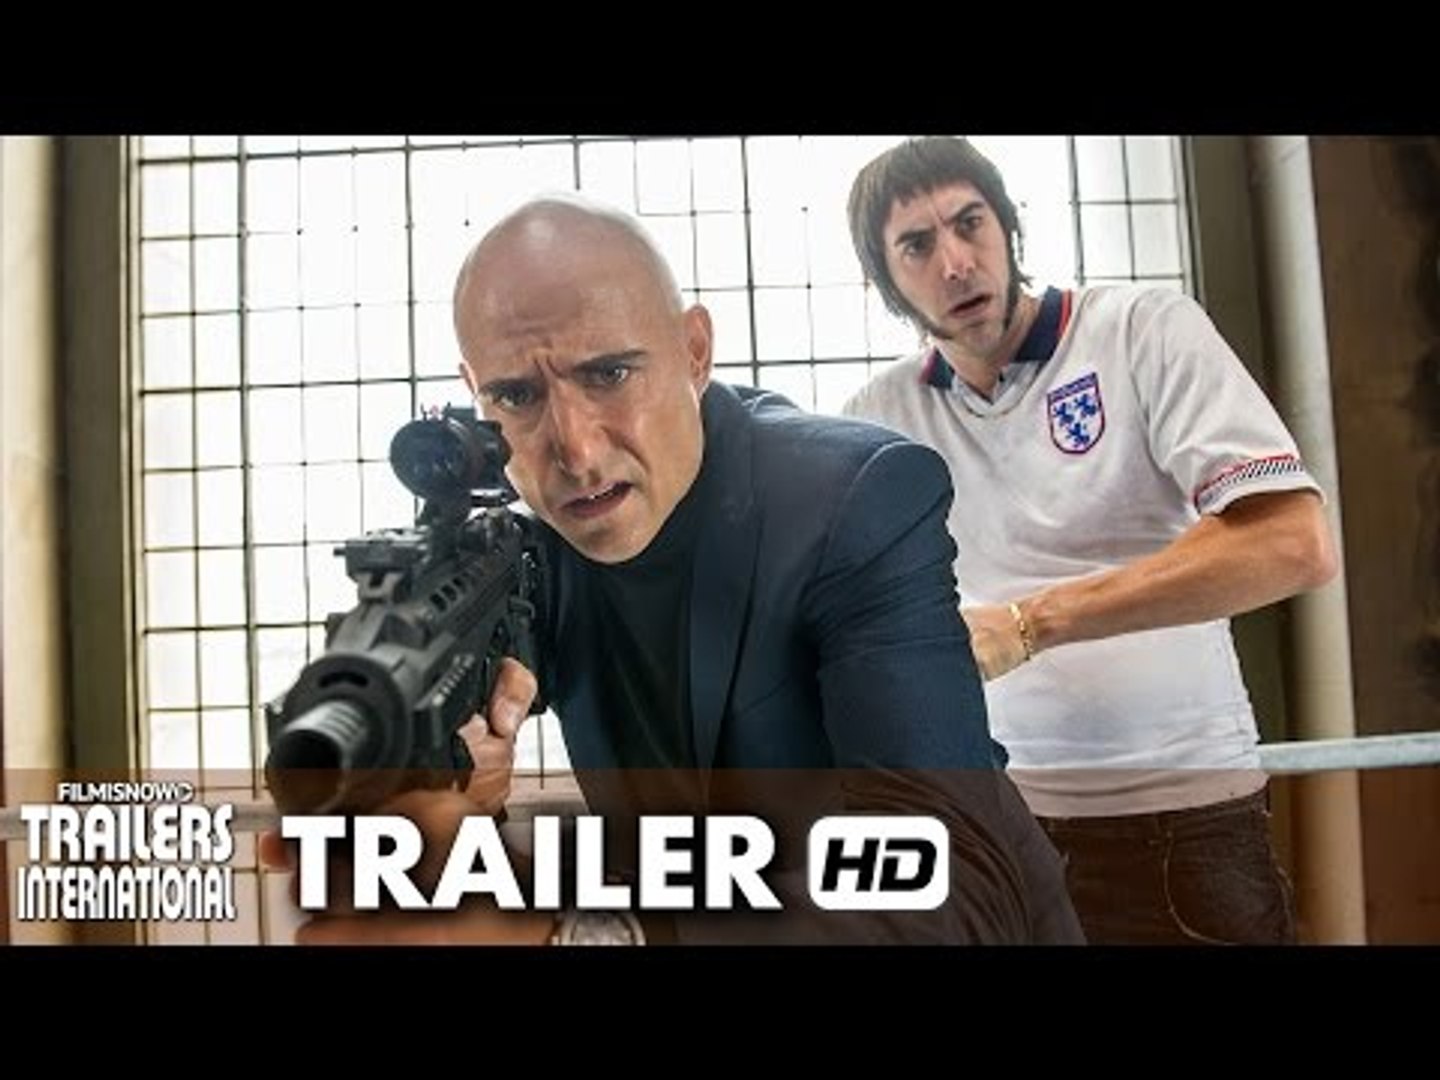 Irmãos e Espiões - Trailer Oficial (Sony Pictures Portugal)